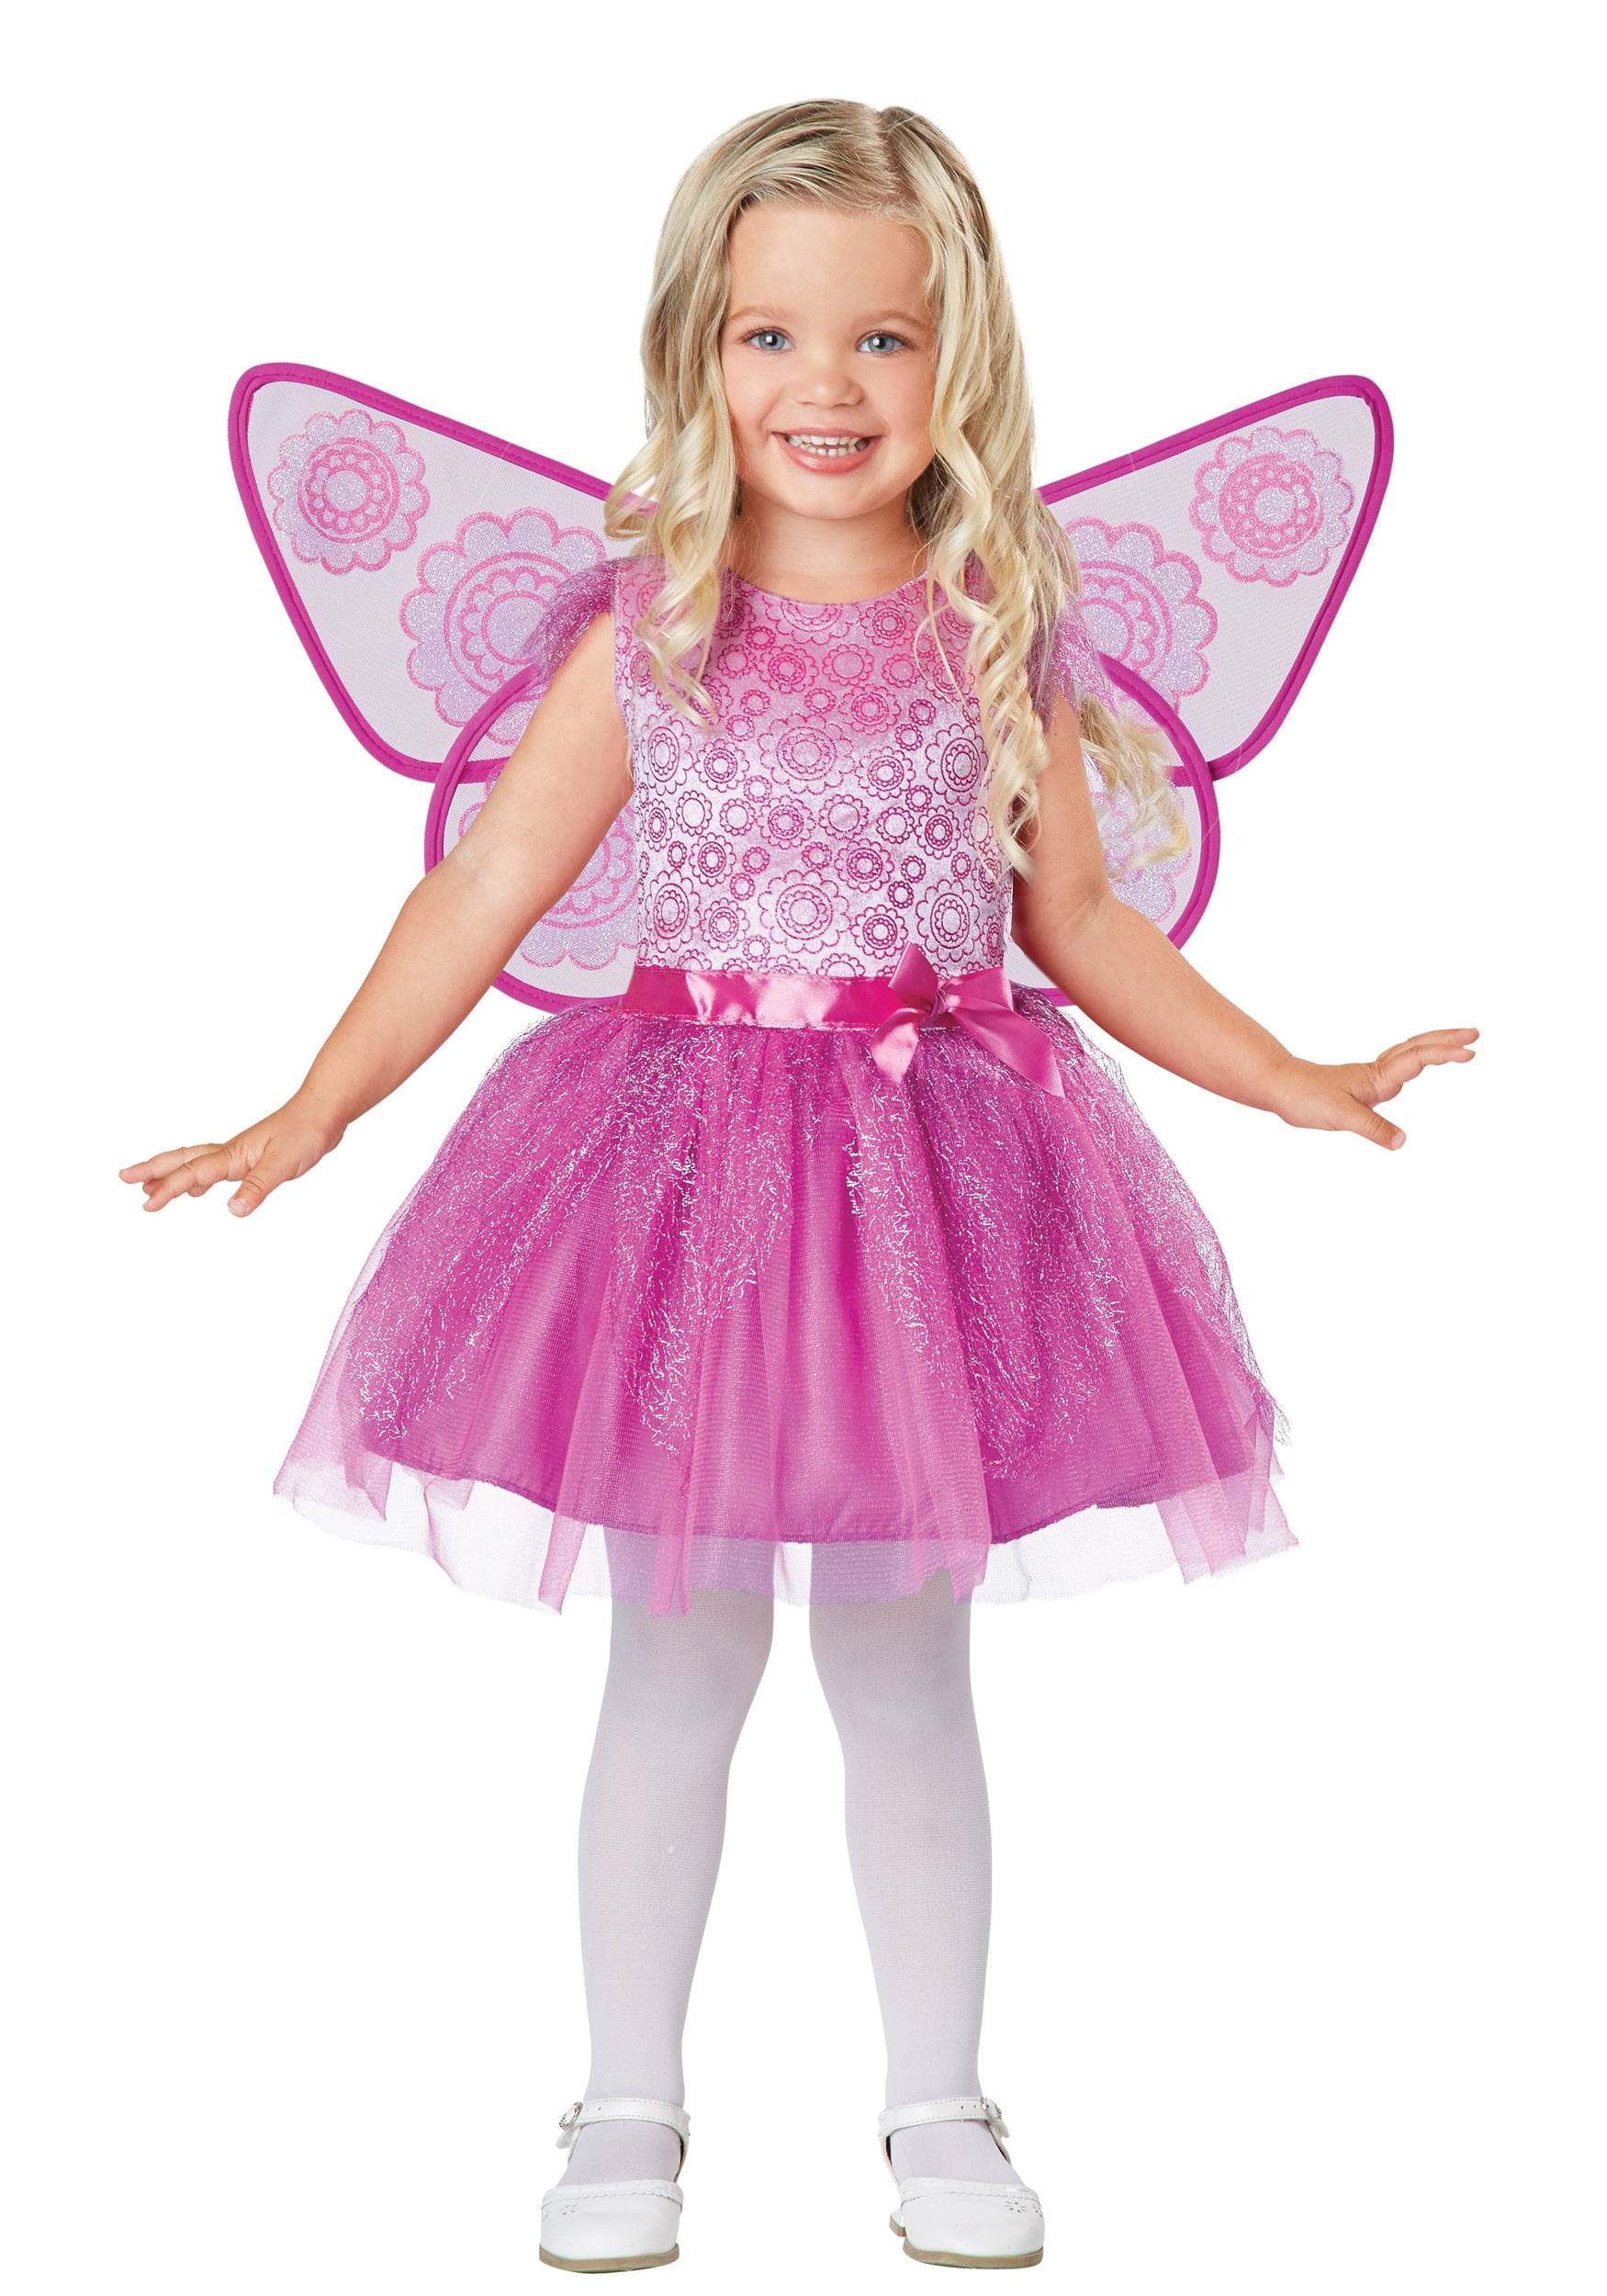 Baby Pink Fairy Dress at Rs 2800.00 | Gurgaon | Delhi| ID: 24763055930